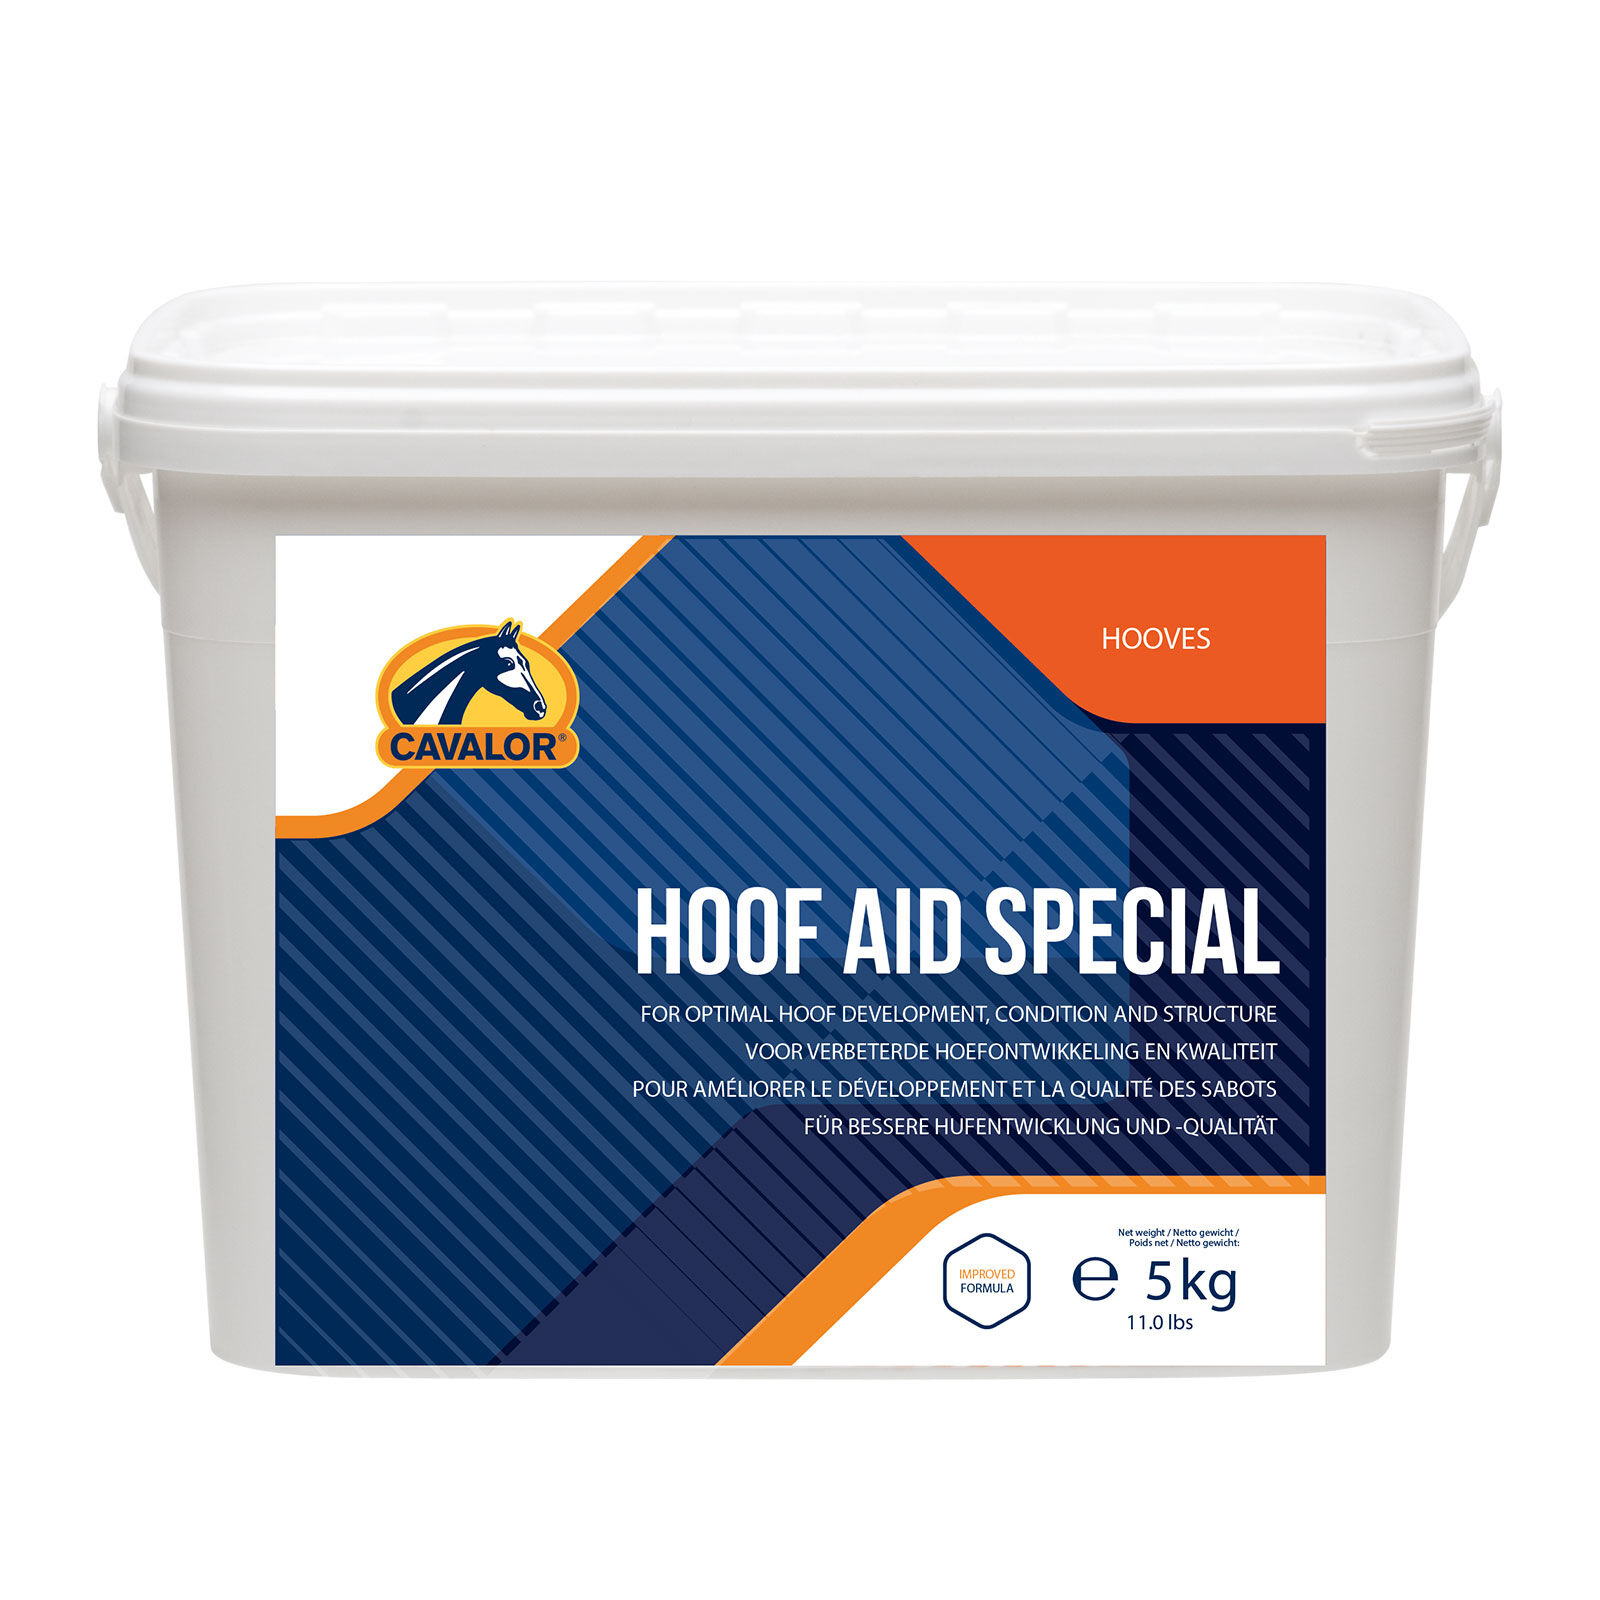 Cavalor Hoof Aid Special, 5 kg   001 unisex